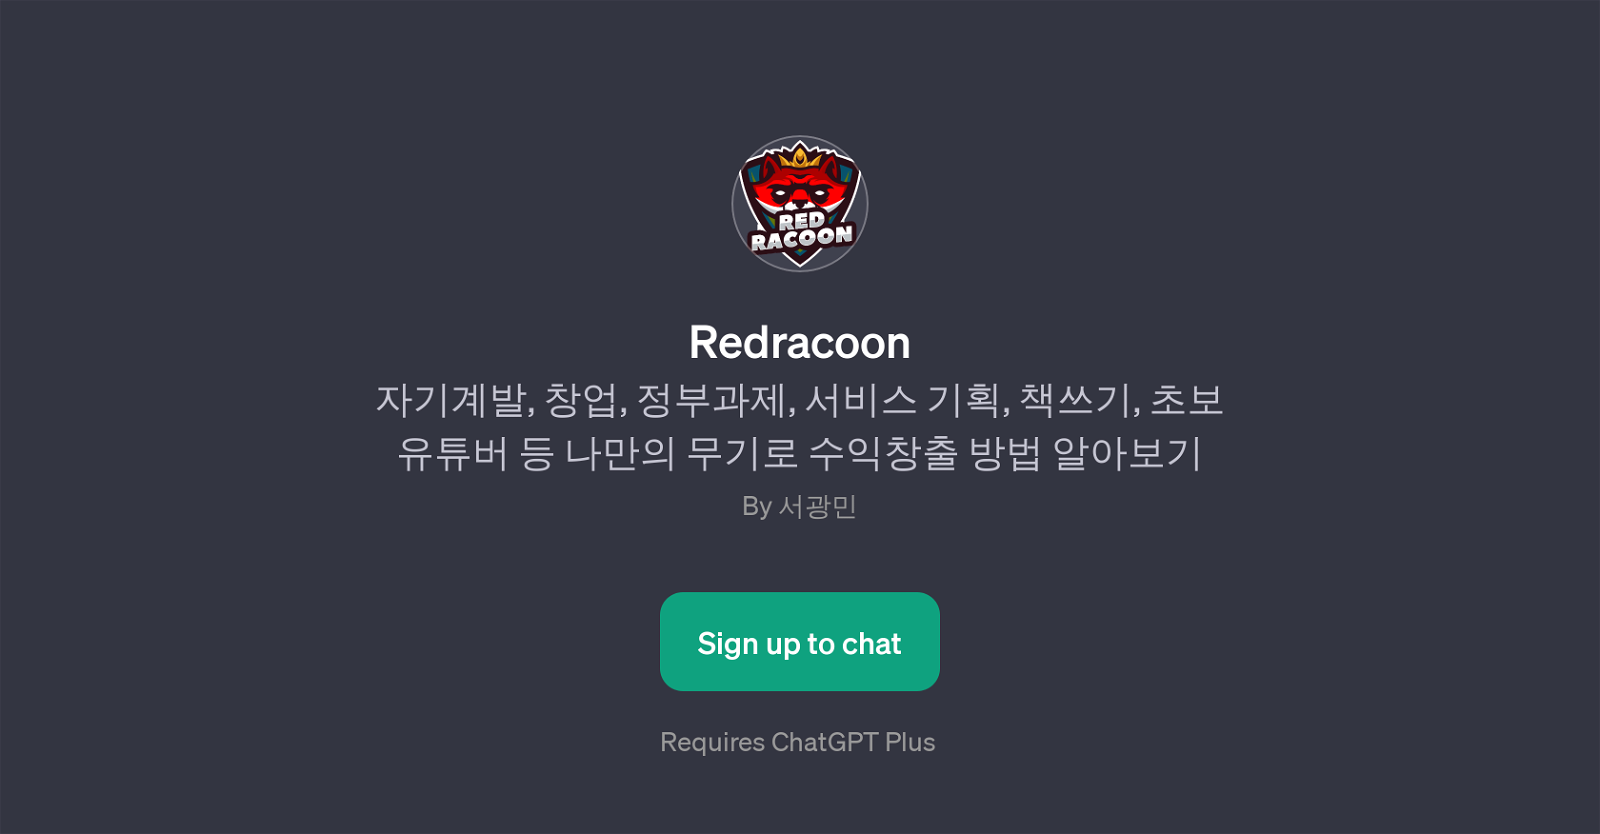 Redracoon website